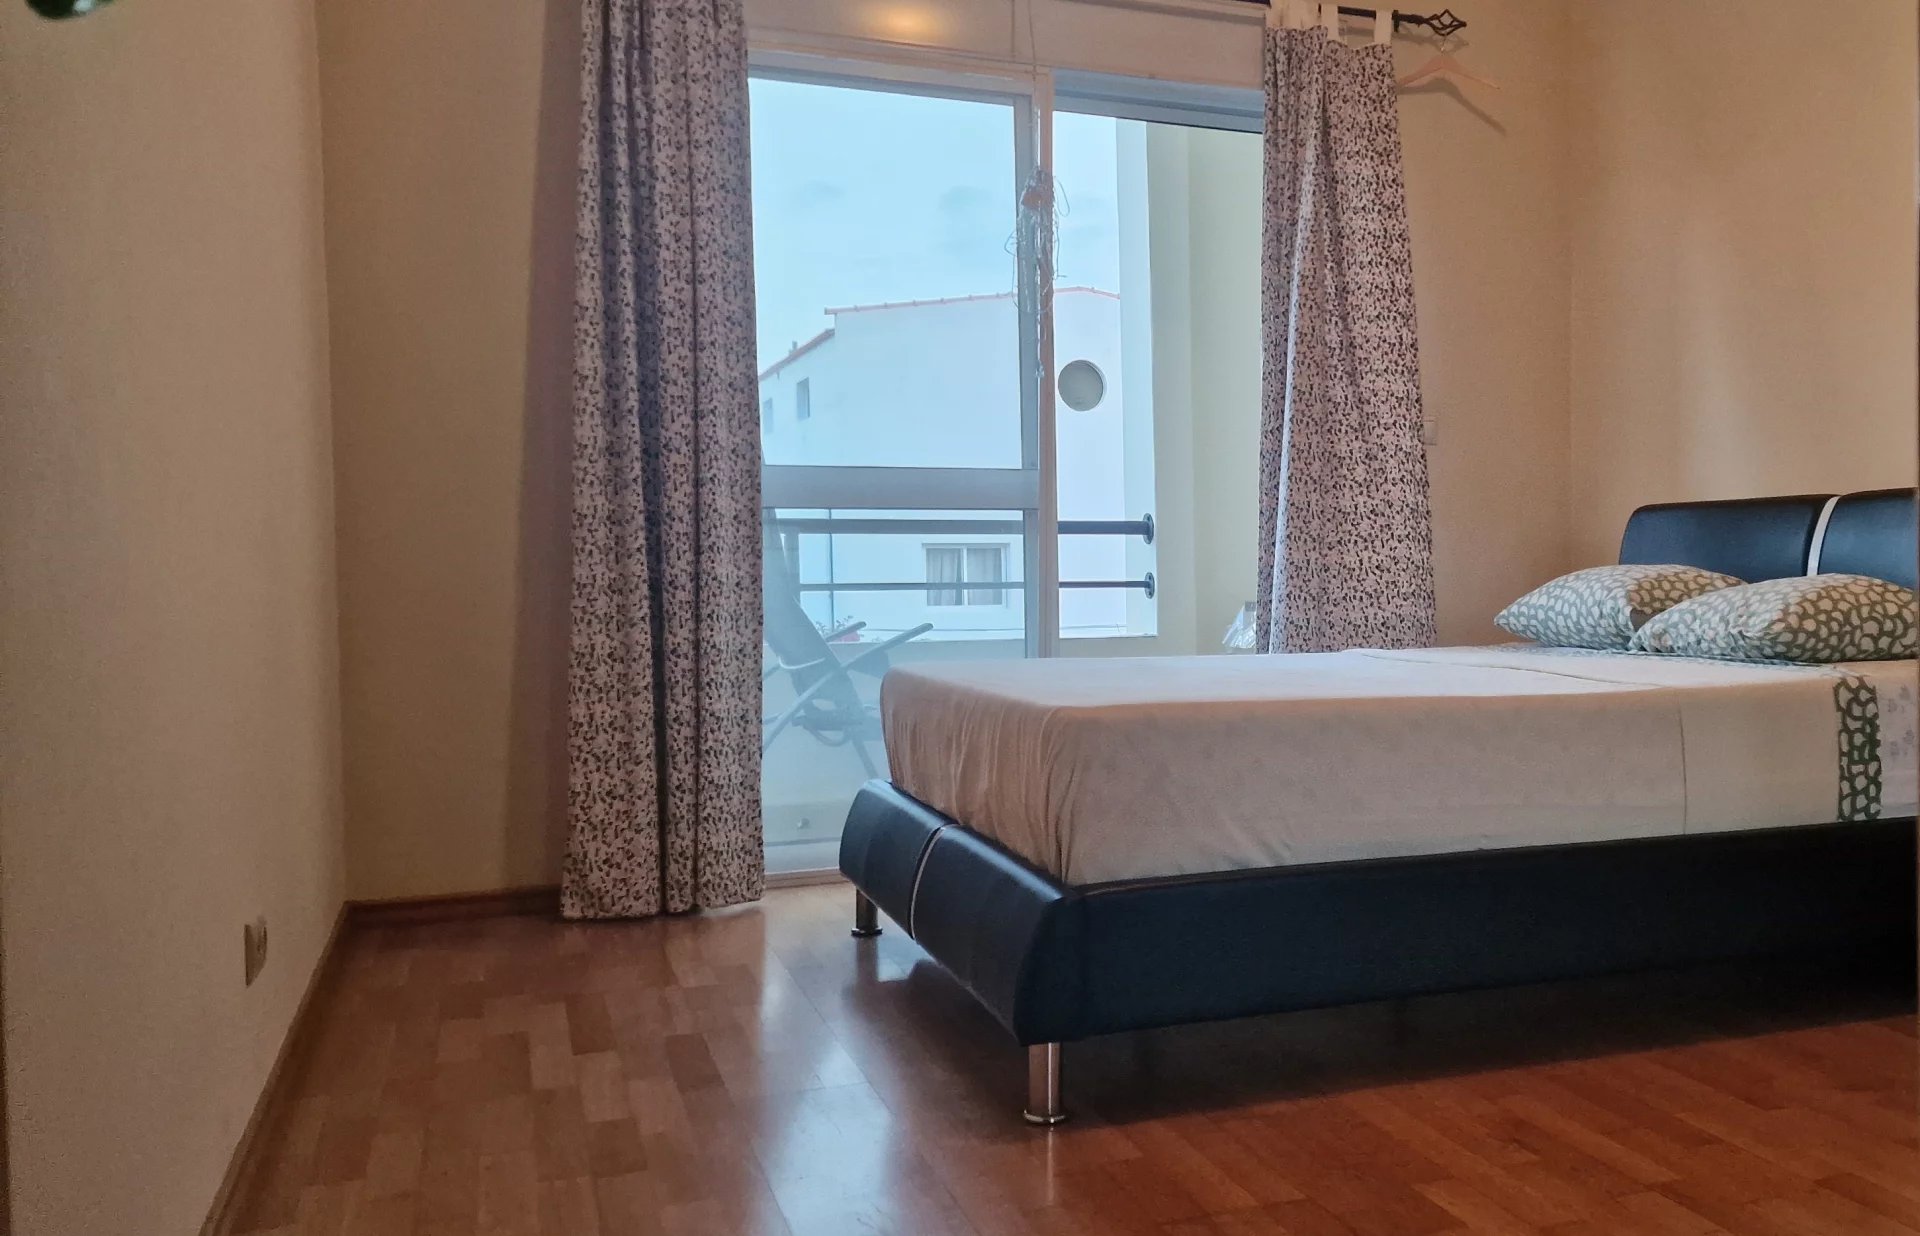 Apartment for seasonal rental in Palmarejo Baixo